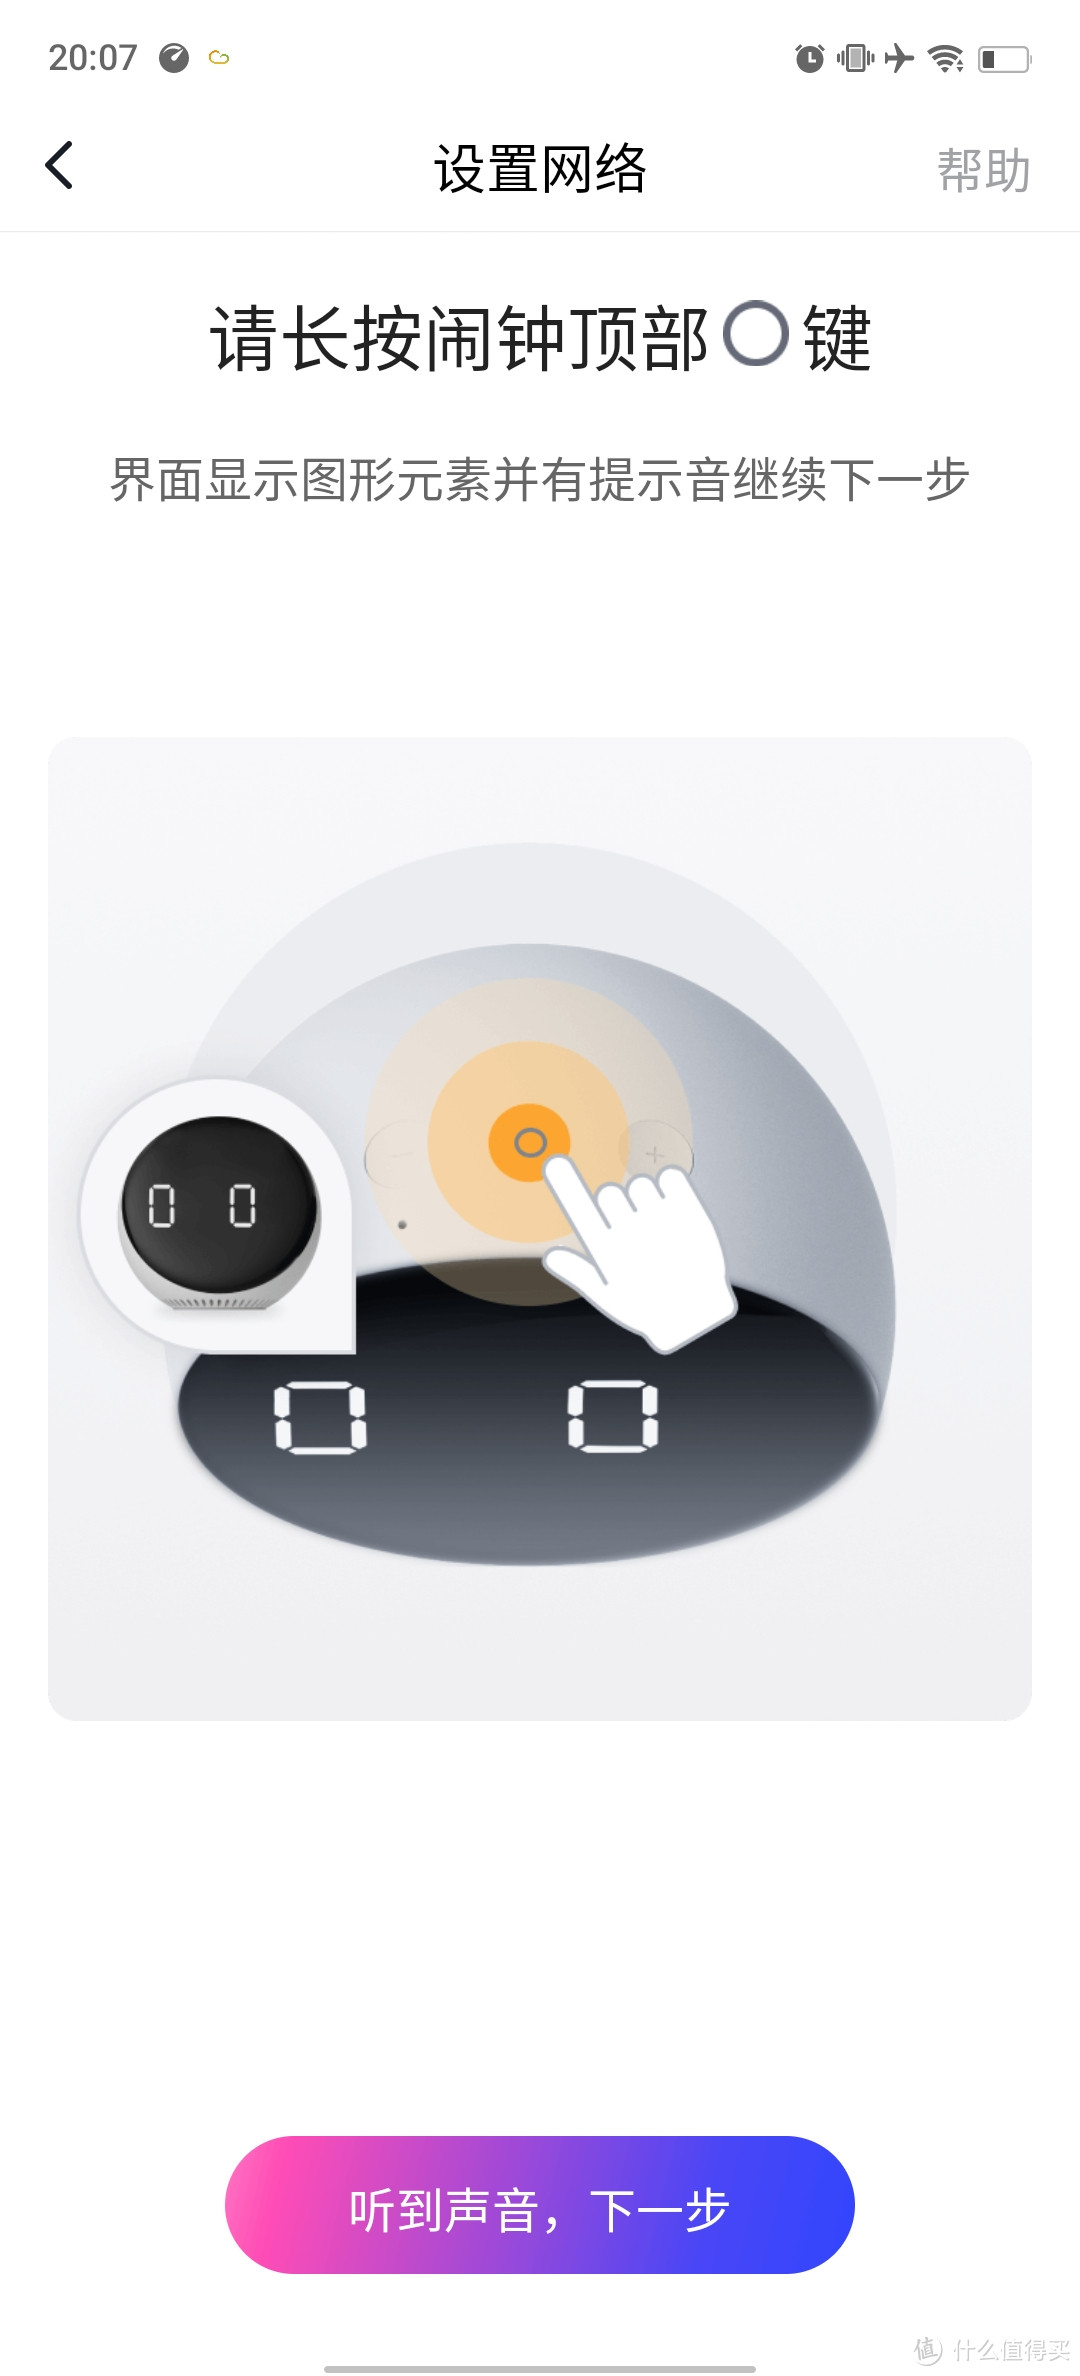 小度语音智能闹钟 Pro （含产品说明书）大屏数字显示 床头创意闹钟 多功能语音交互 红外遥控家电